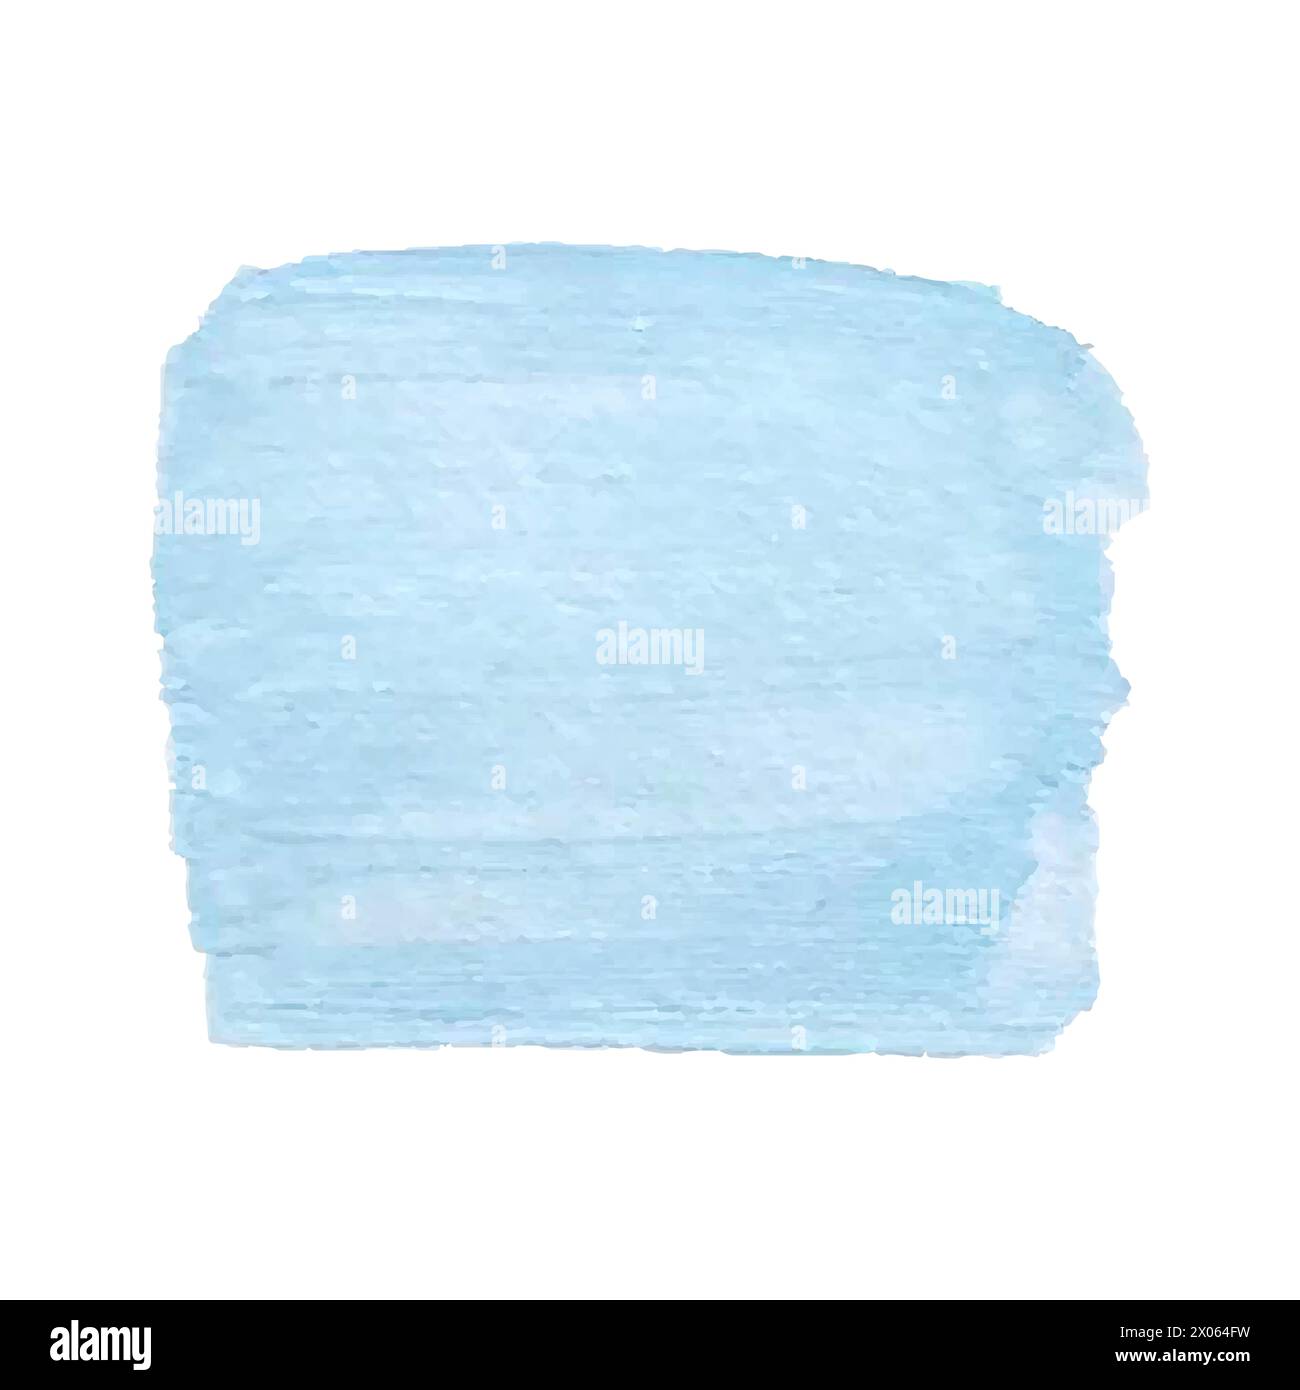 Dessin de main de coup de pinceau de texture bleu acrylique, isolé sur fond blanc. Illustration vectorielle Illustration de Vecteur